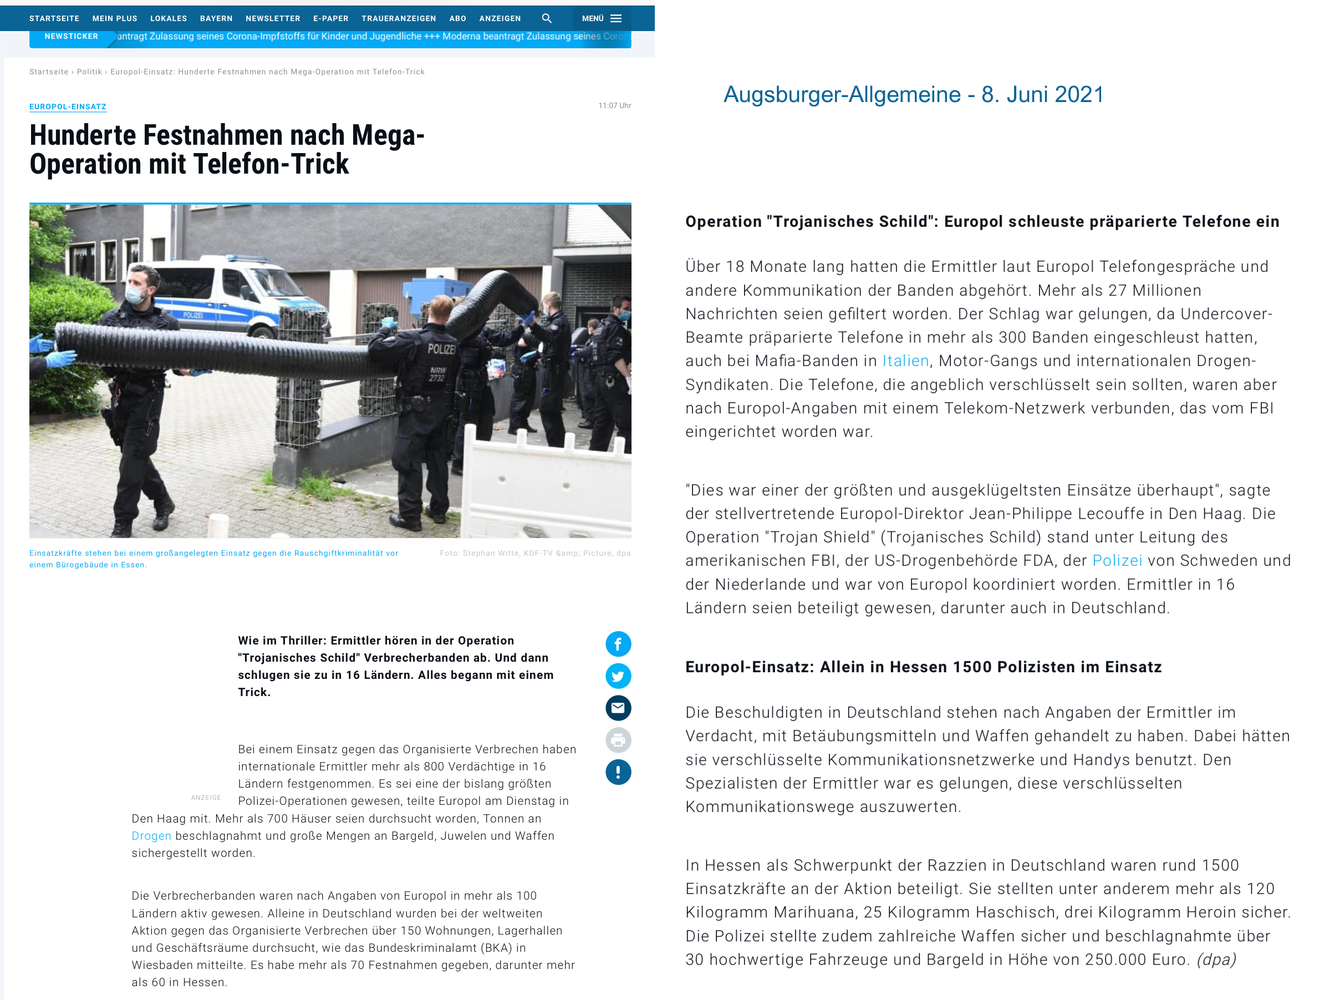 20210608 EUROPOL Operation Trojanisches Schild - 800 Verdächtige in 16 Ländern festgenommen.png